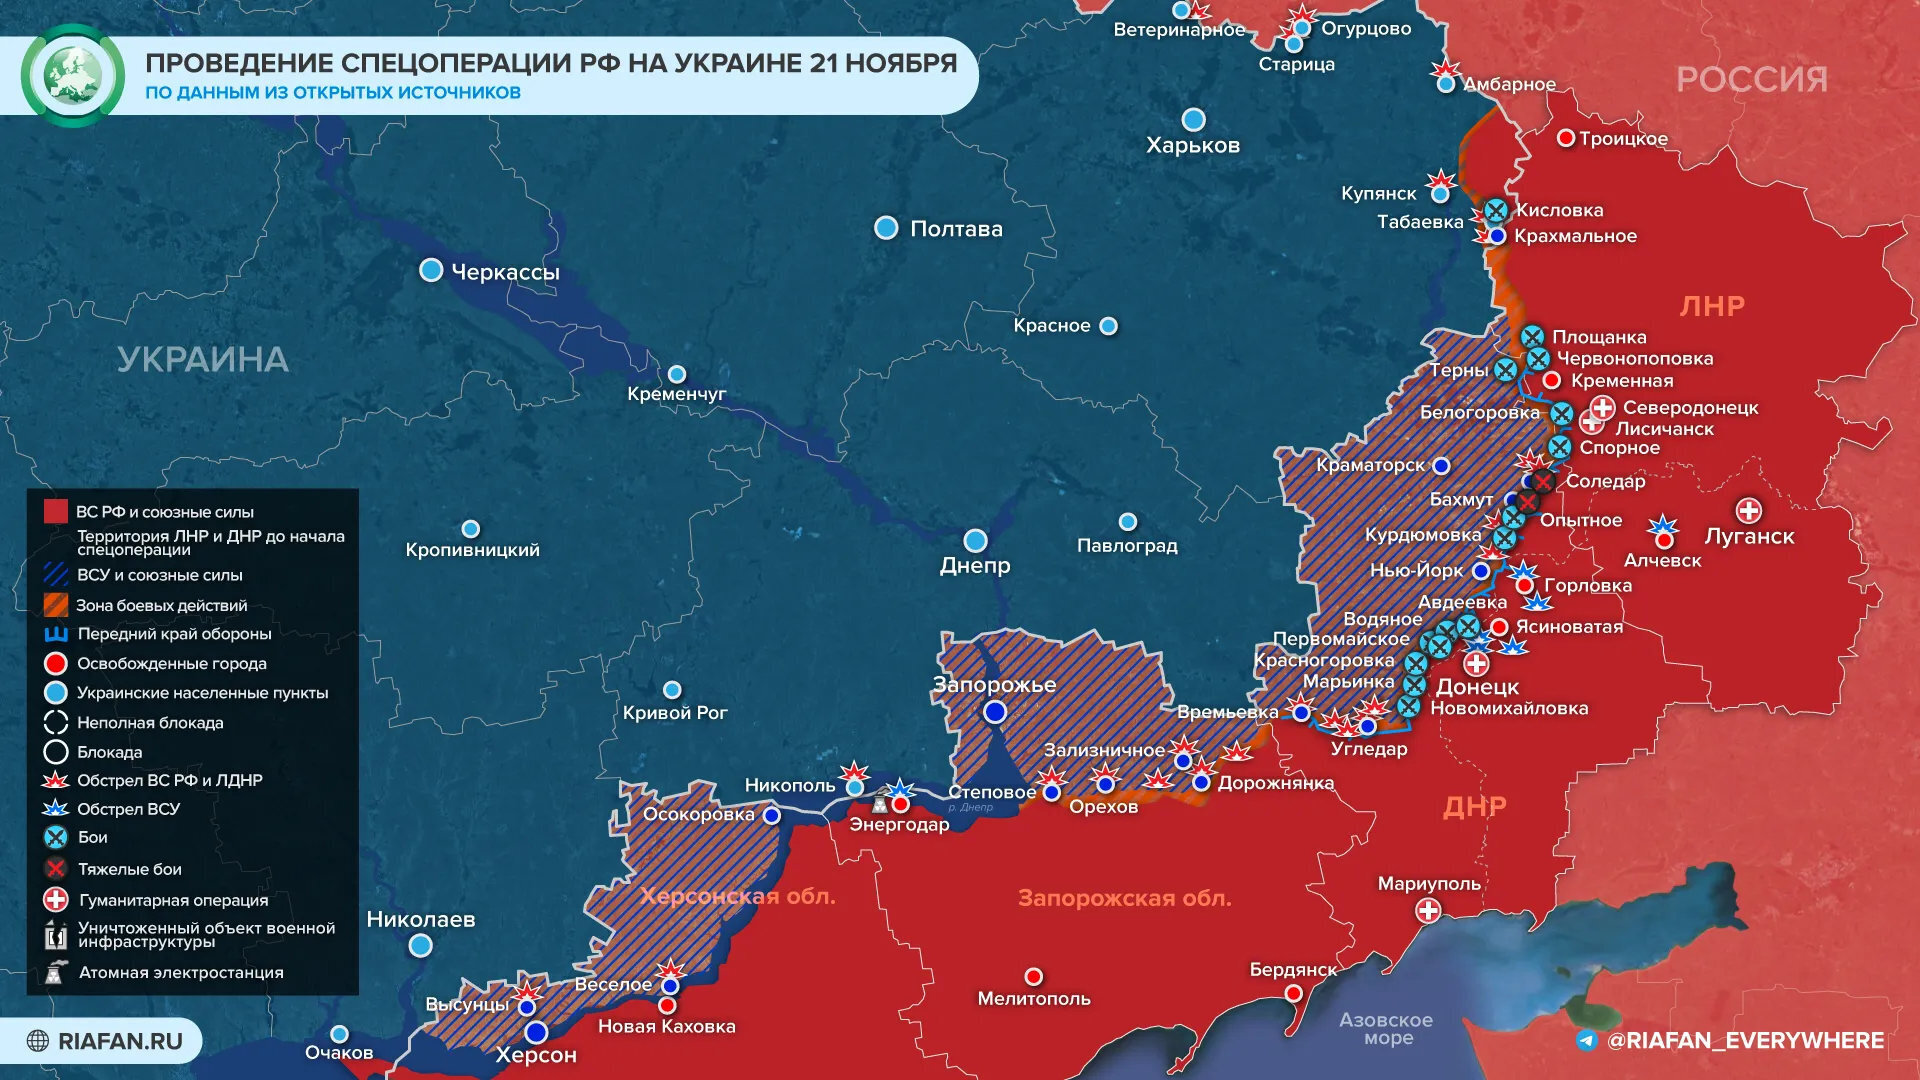 Армия РФ наступает: спецоперация на Украине сегодня, 22 ноября 2022. Карта боевых действий на Украине, обзор событий и новости с Донбасса, 22.11.2022